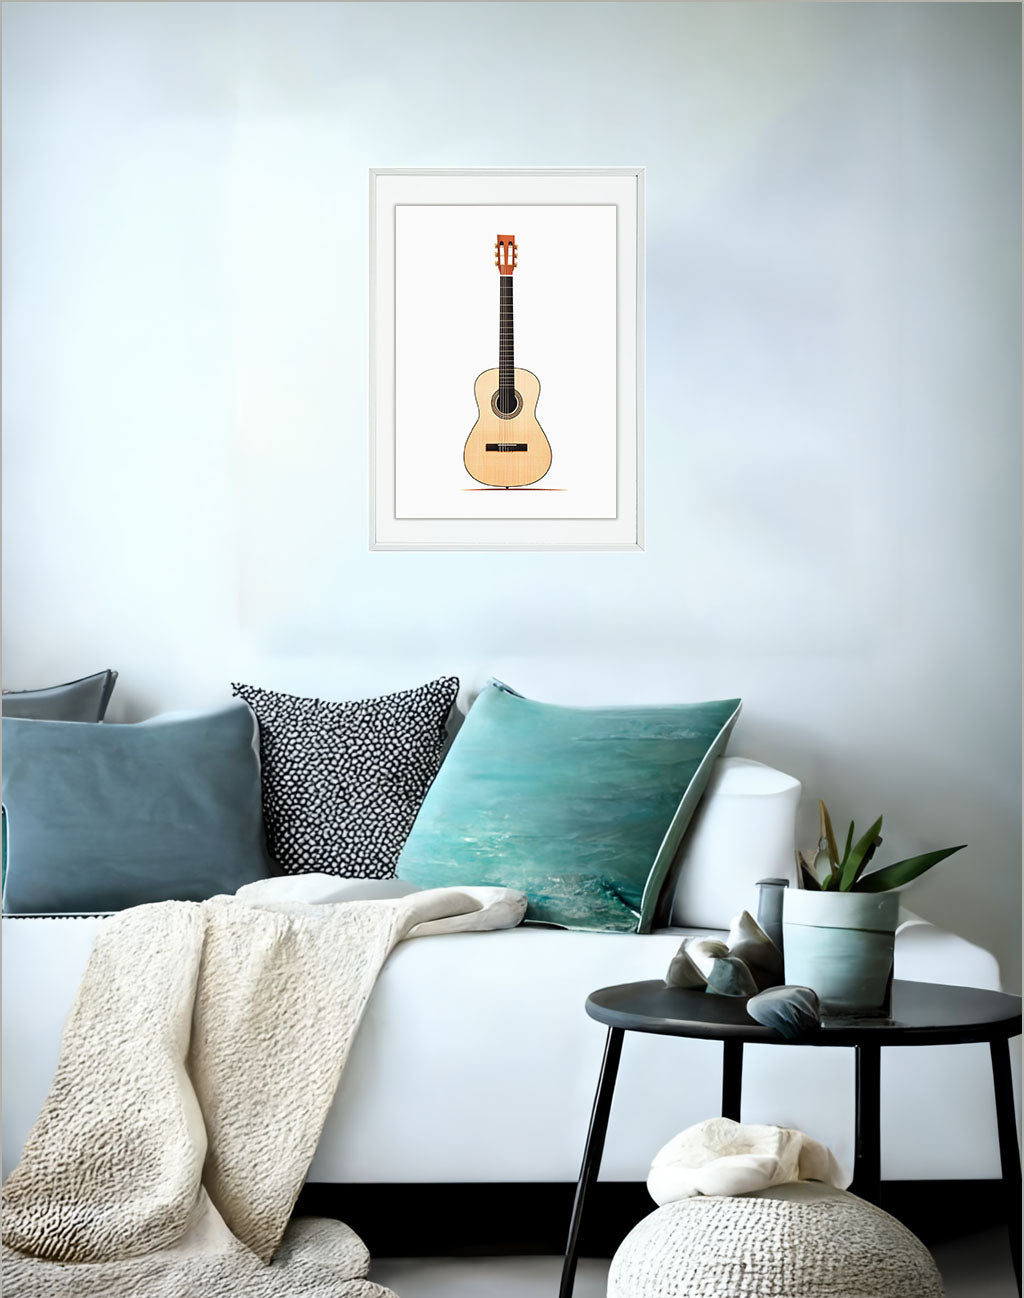 ギターのアートポスター:guitar_b2a2 / 音楽・芸術__のポスター画像ソファ近くに設置したイメージ